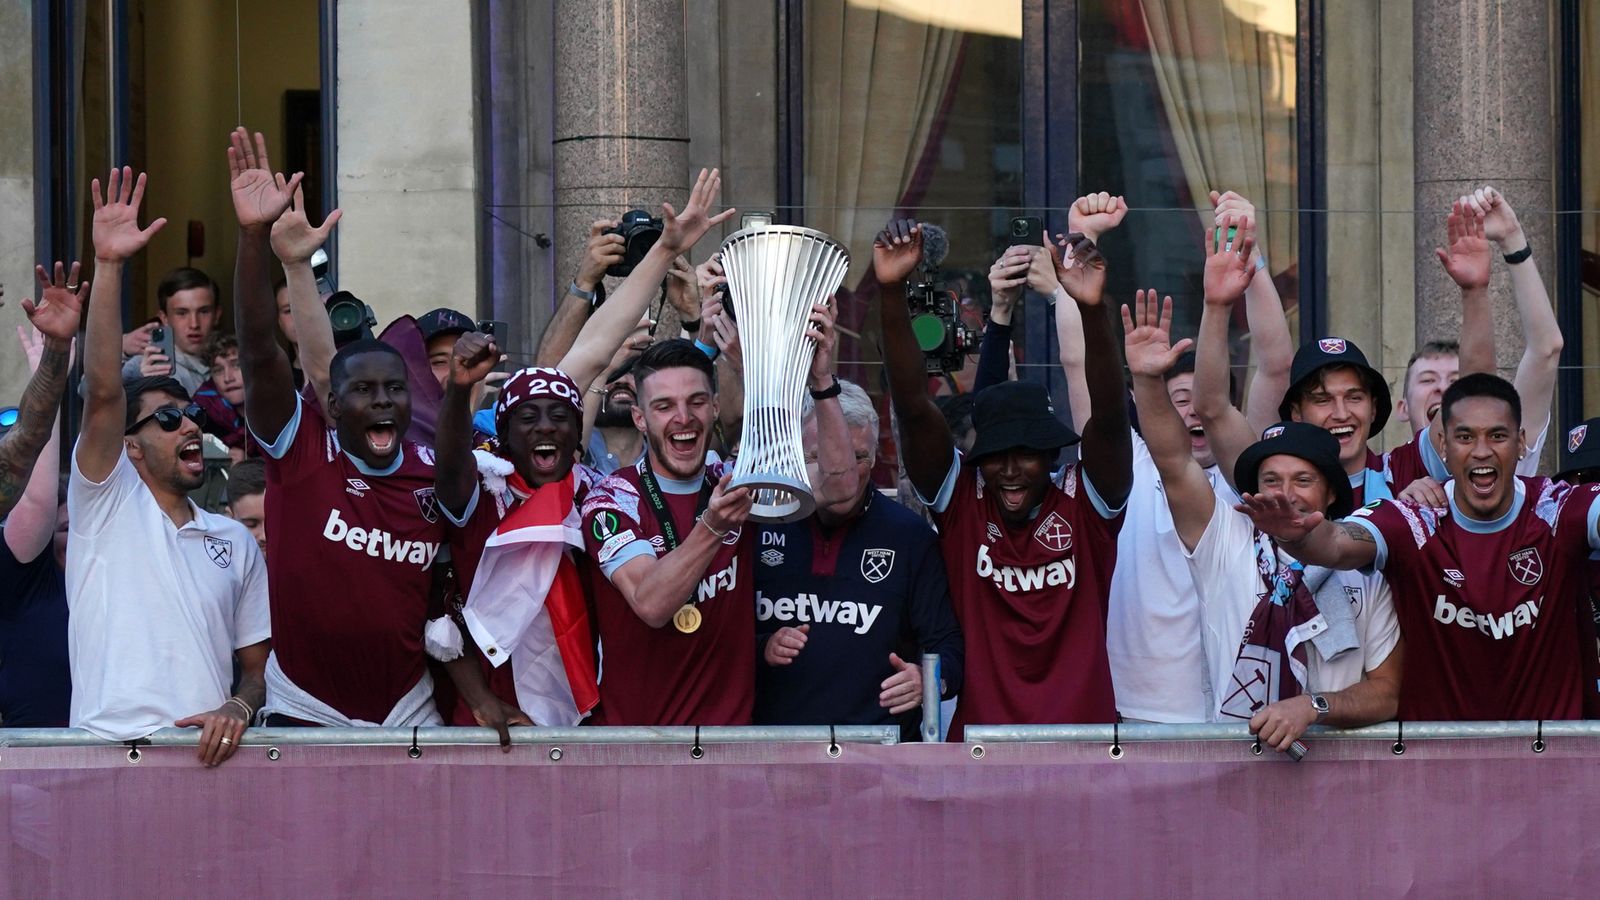 West Ham-Fans sind begeistert, als die Mannschaft eine Siegesparade veranstaltet, um den Sieg in der Europa Conference League zu feiern |  Fußballnachrichten